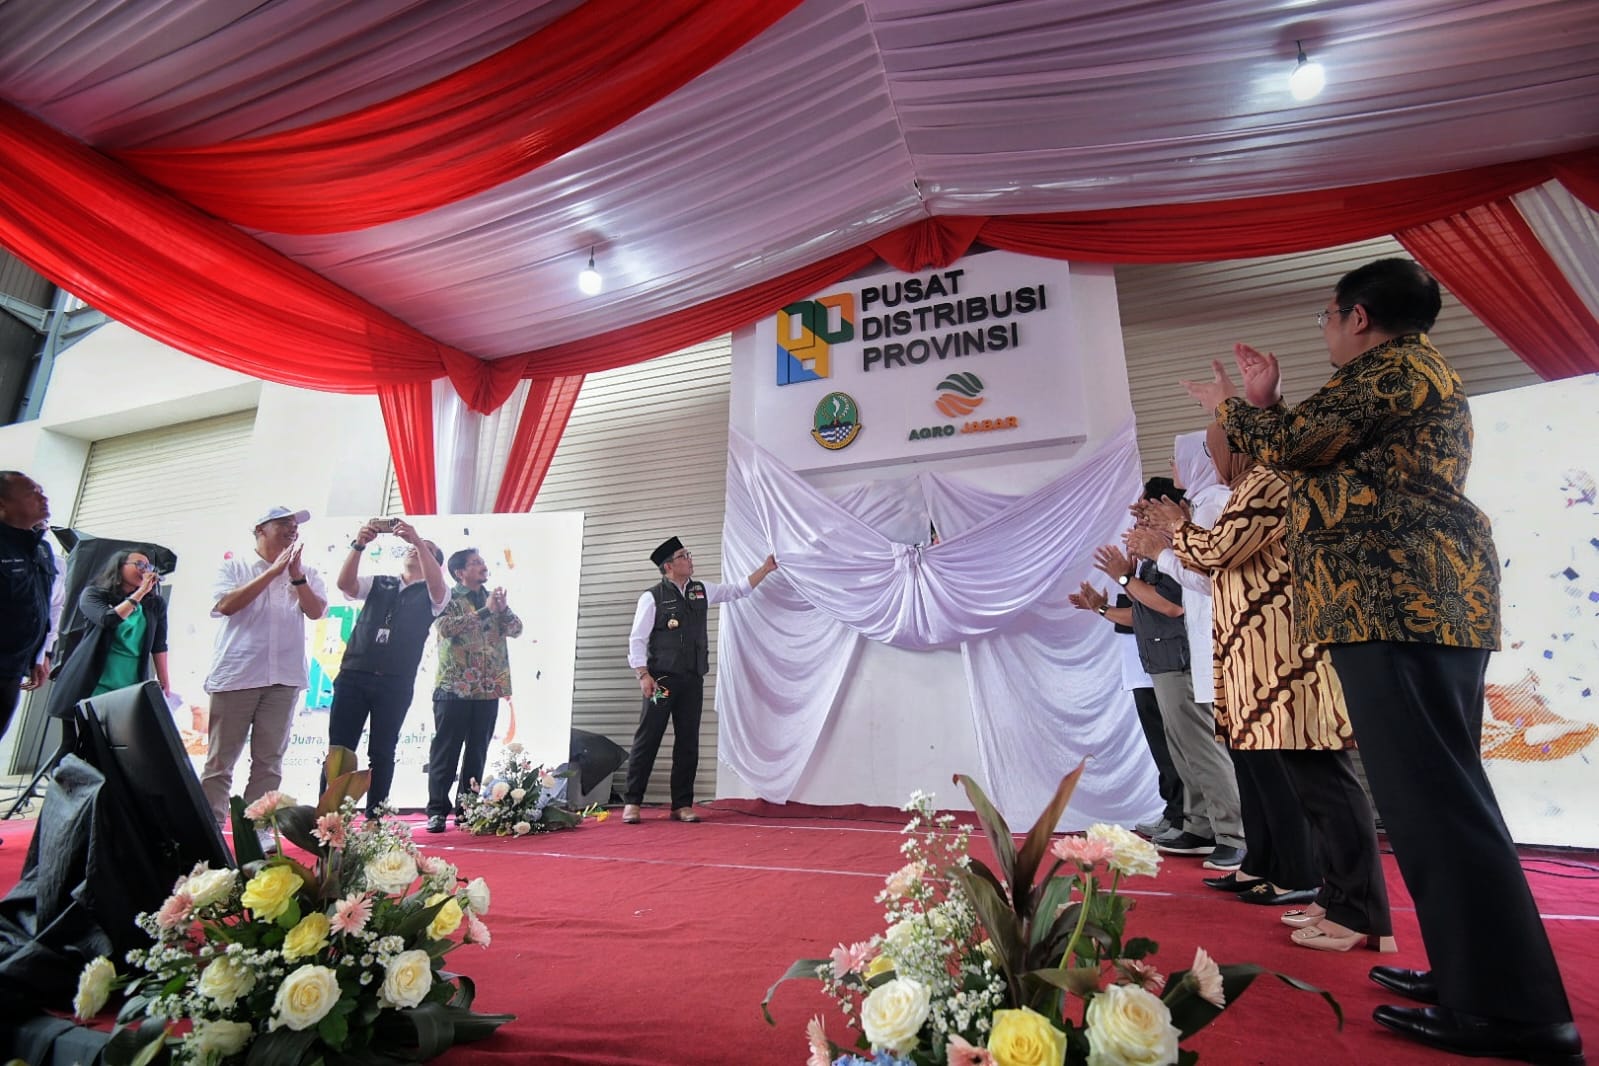 Gubernur Jawa Barat Ridwan Kamil meresmikan PDP di Jalan Raya Purwakarta-Subang KM 14 kampung Cisantri, Desa Kabupaten Purwakarta. (Istimewa)